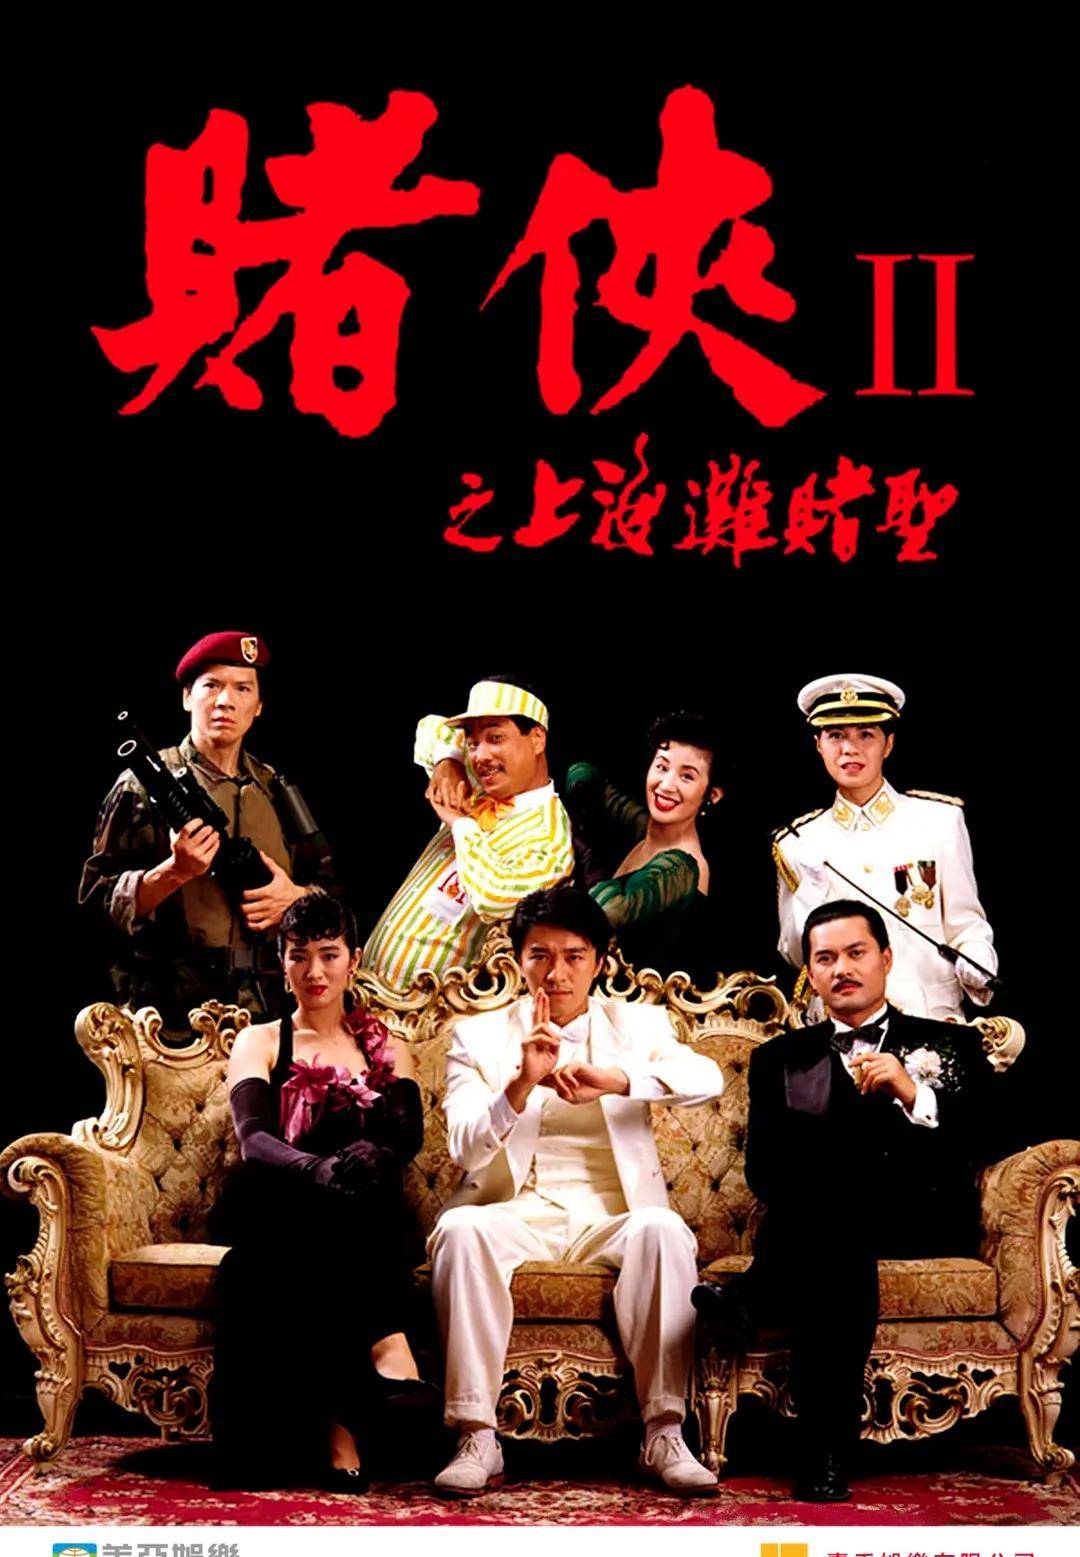 盘点香港9大经典赌片,《赌神》仅排第4,周星驰多部上榜